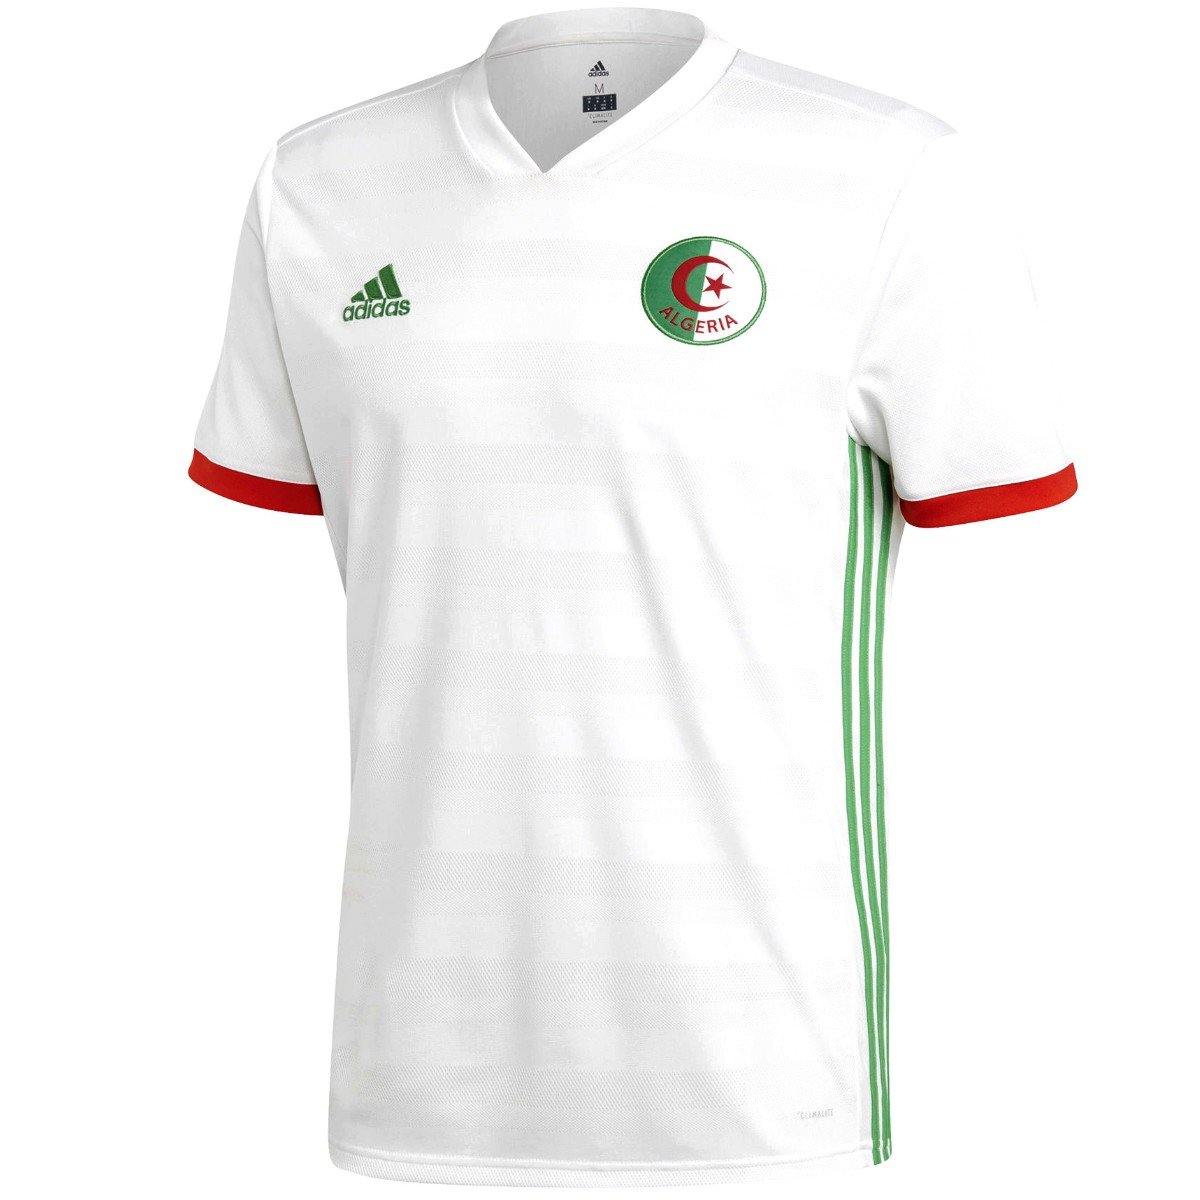 Algeria national team Home soccer jersey - Adidas SoccerTracksuits.com